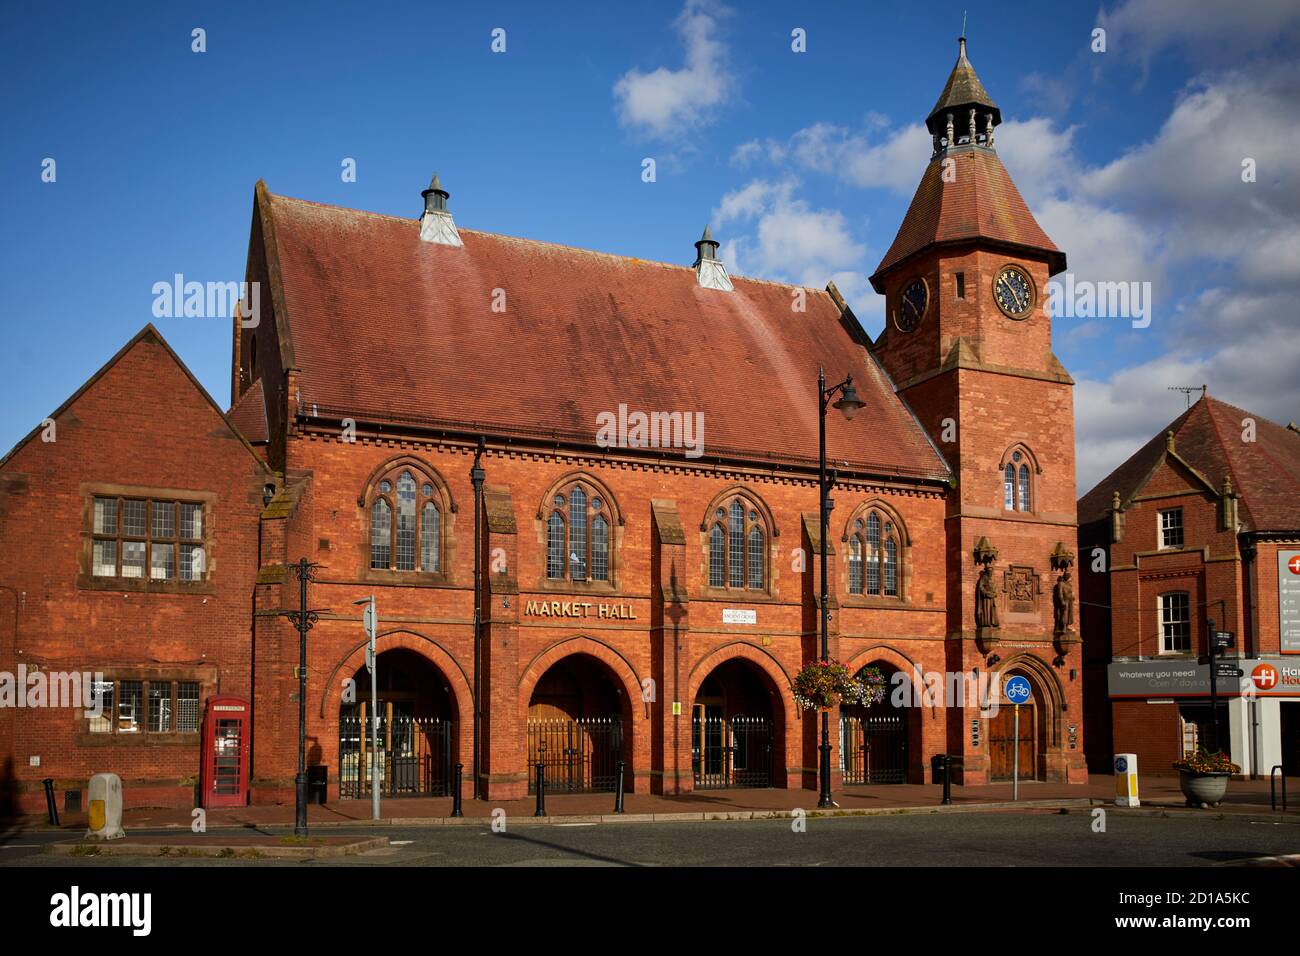 Sandbach marché ville Cheshire, Angleterre, hôtel de marché et hôtel de ville bâtiment en brique rouge conçu par Thomas Bower dans le style gothique de renouveau Grade II Banque D'Images